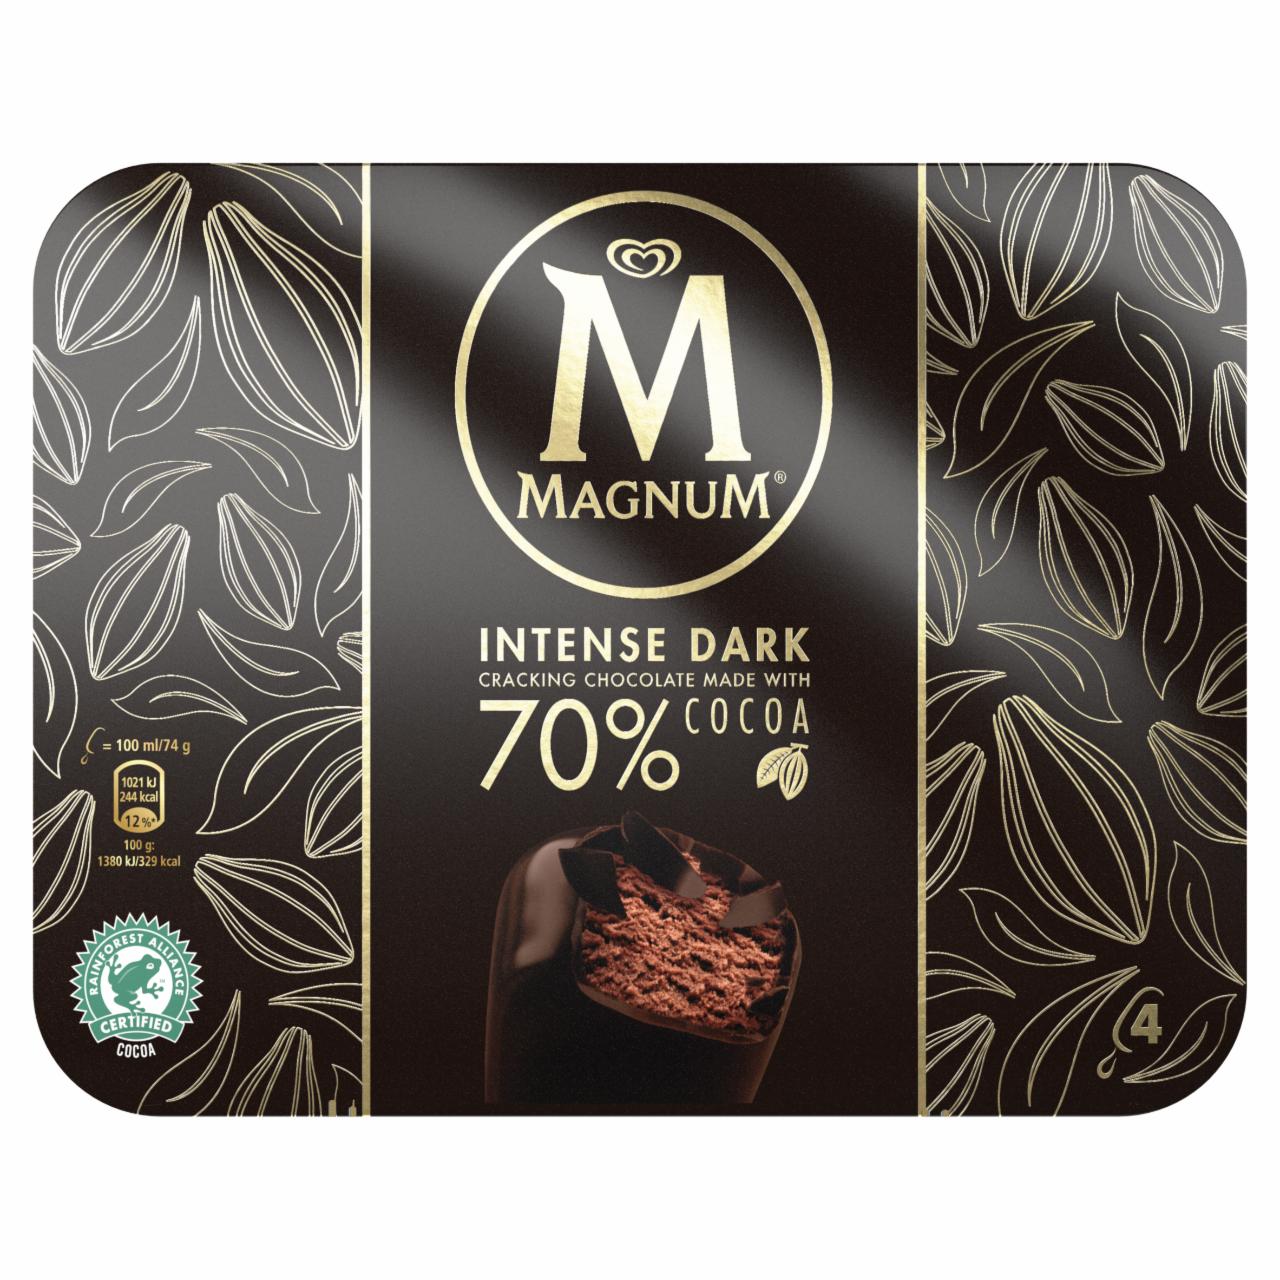 Képek - Magnum Multipack Intense Dark jégkrém 4 x 100 ml